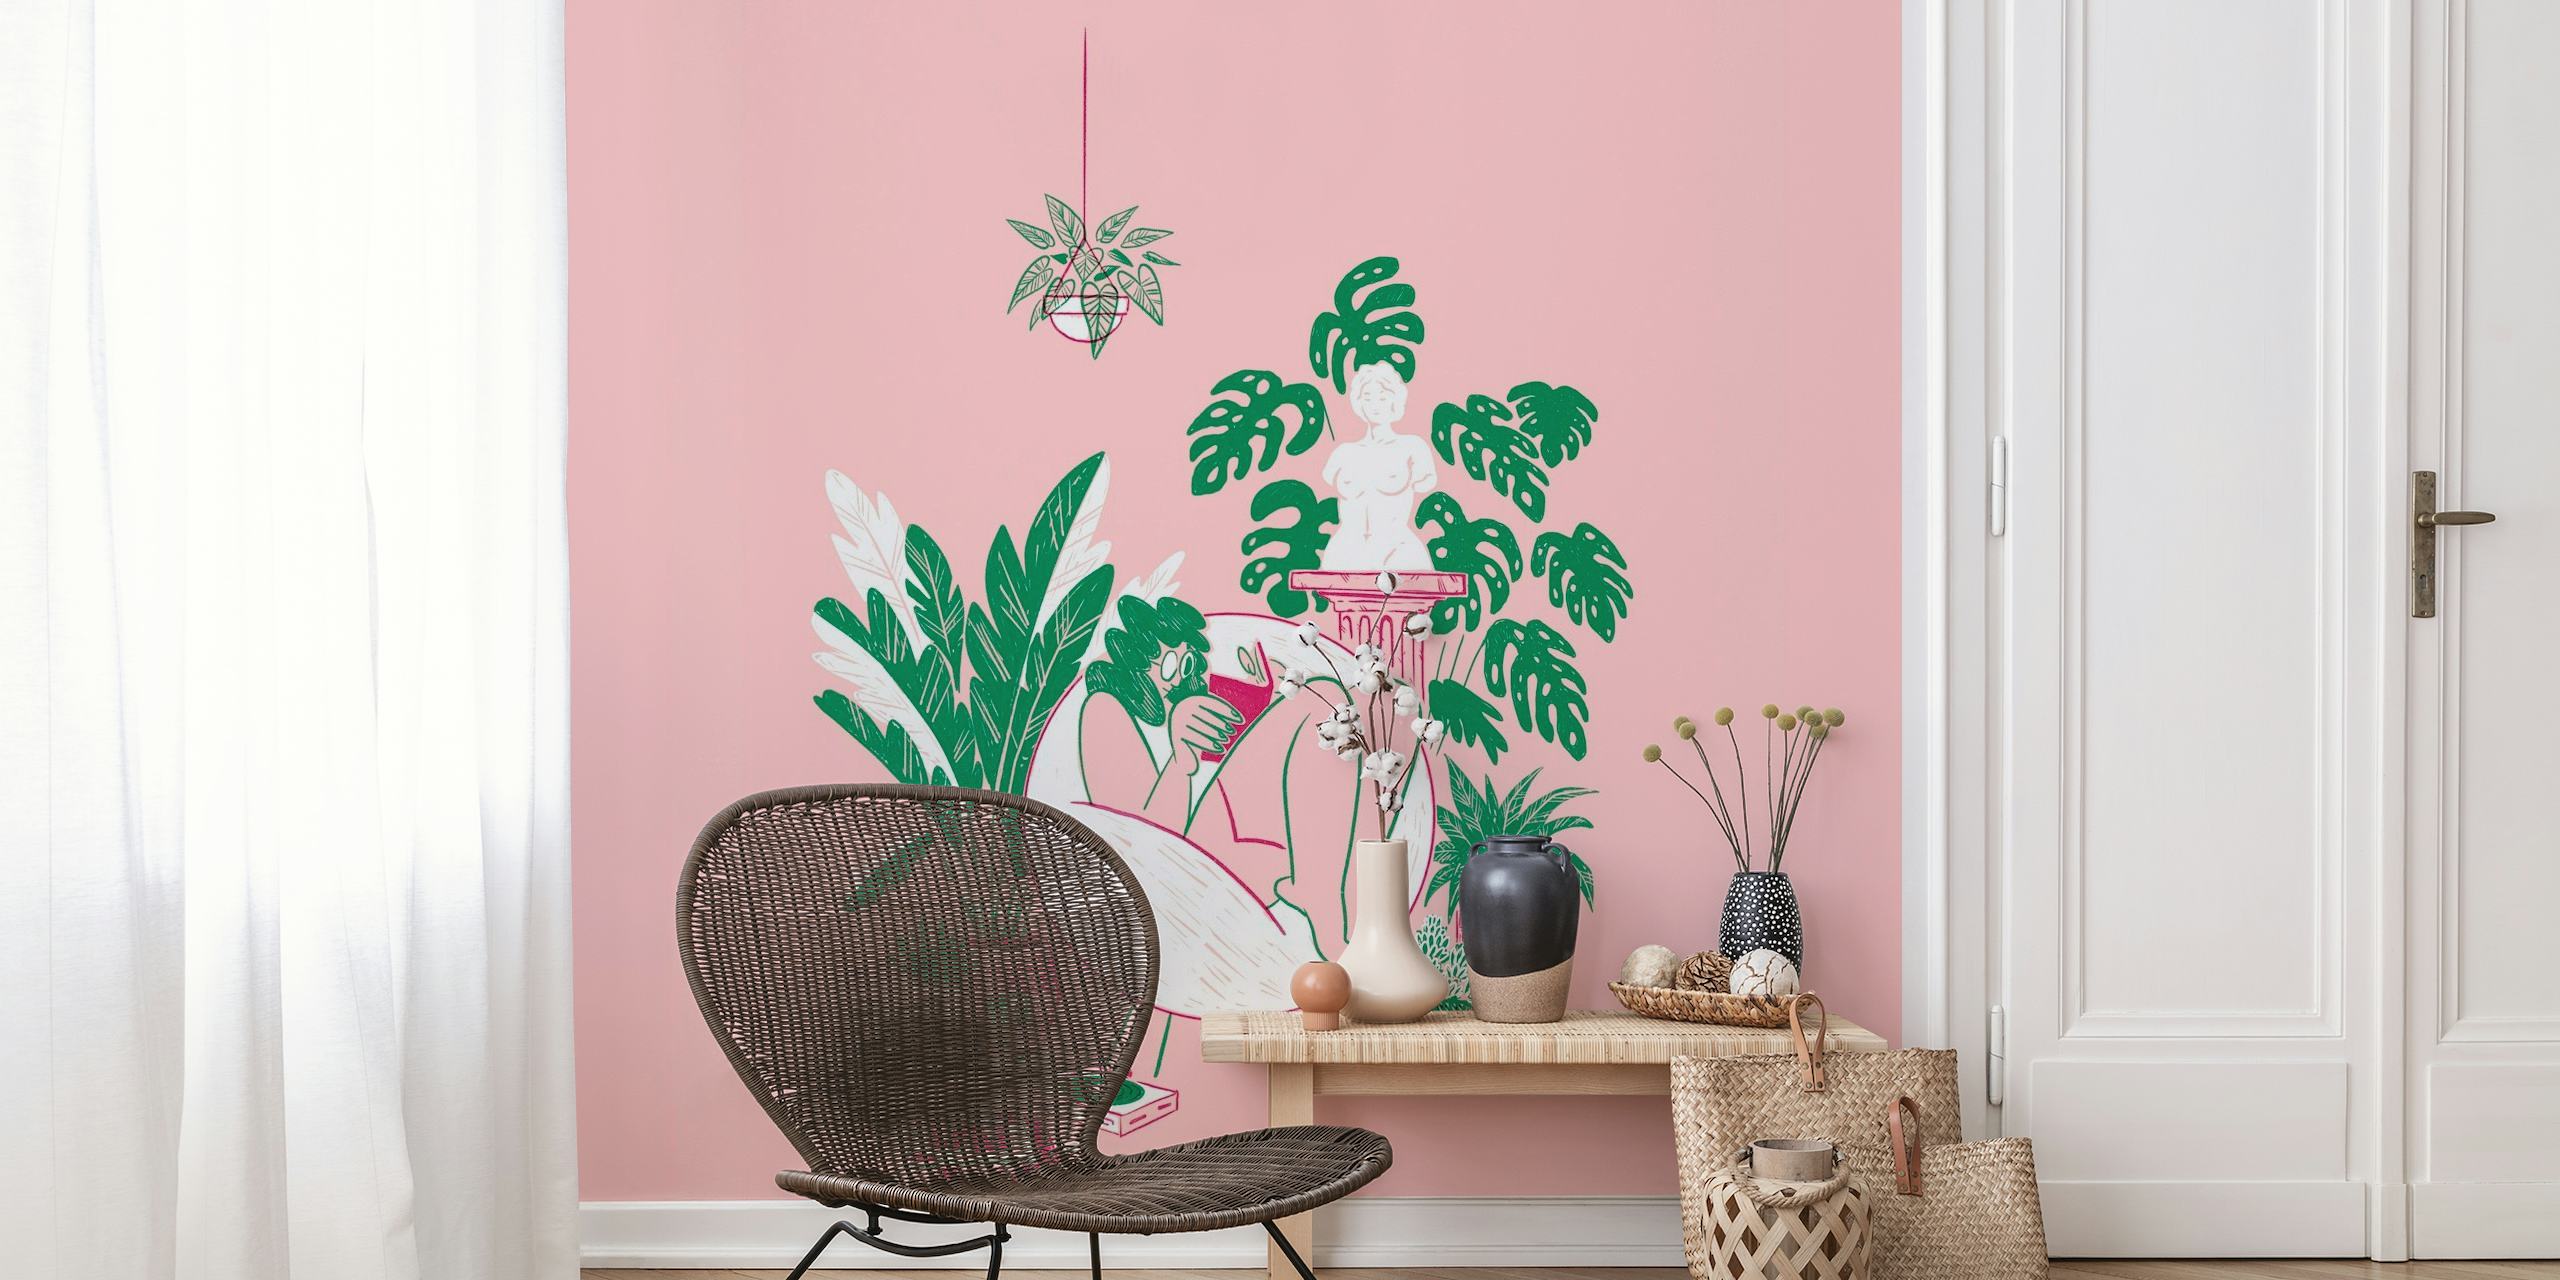 Ilustración de una persona rodeada de plantas en macetas sobre fondo rosa, capturando una tranquila escena de jardín interior.